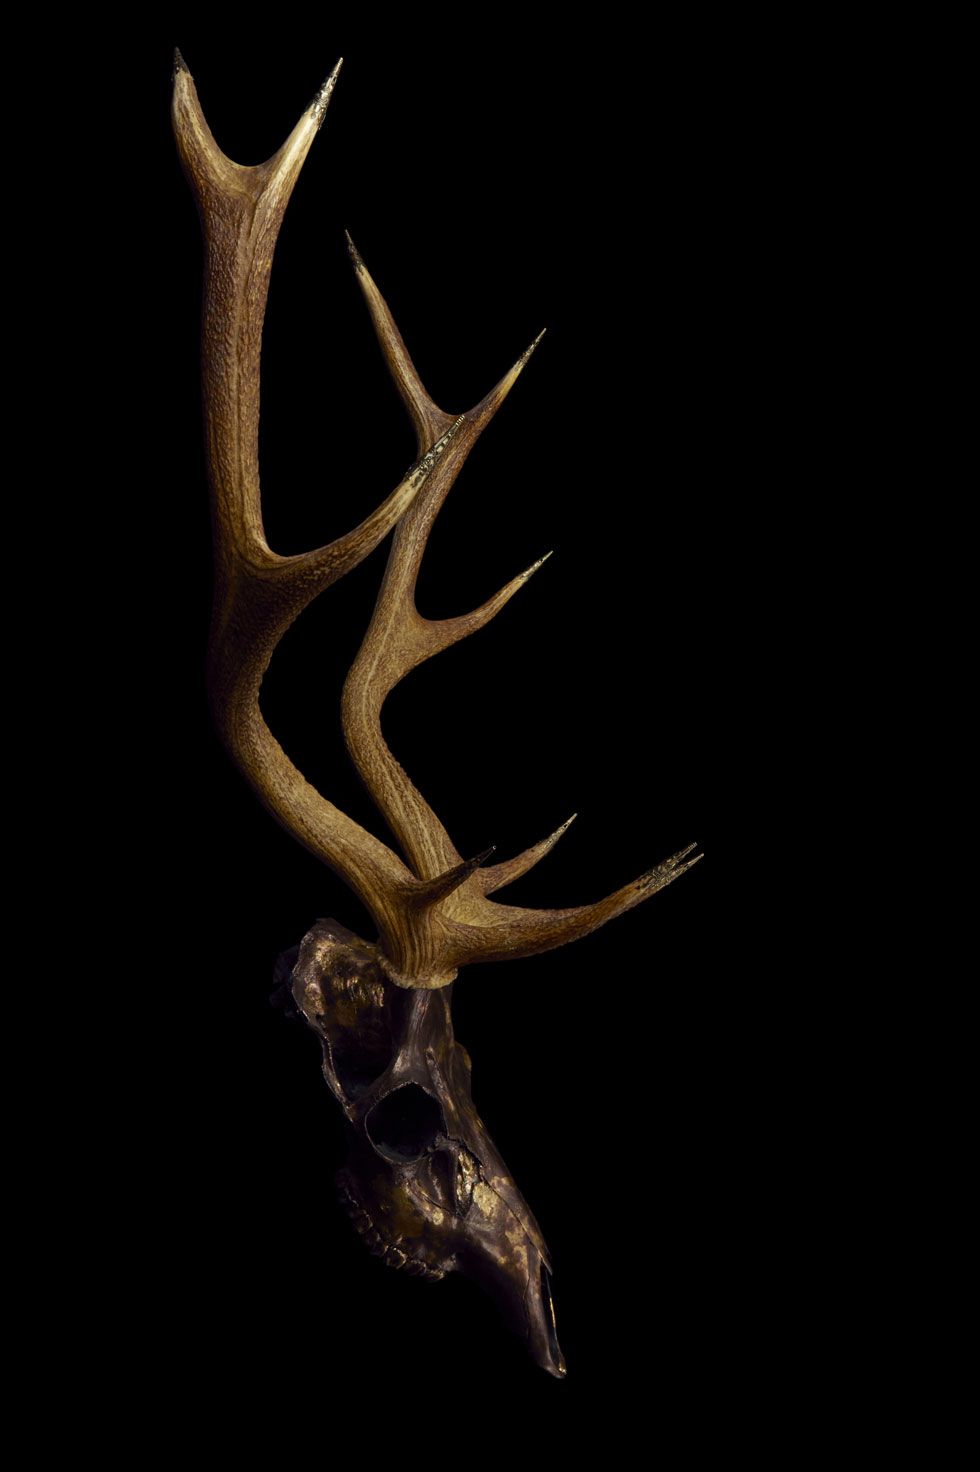 A deer skull with antlers on it is shown - Deer